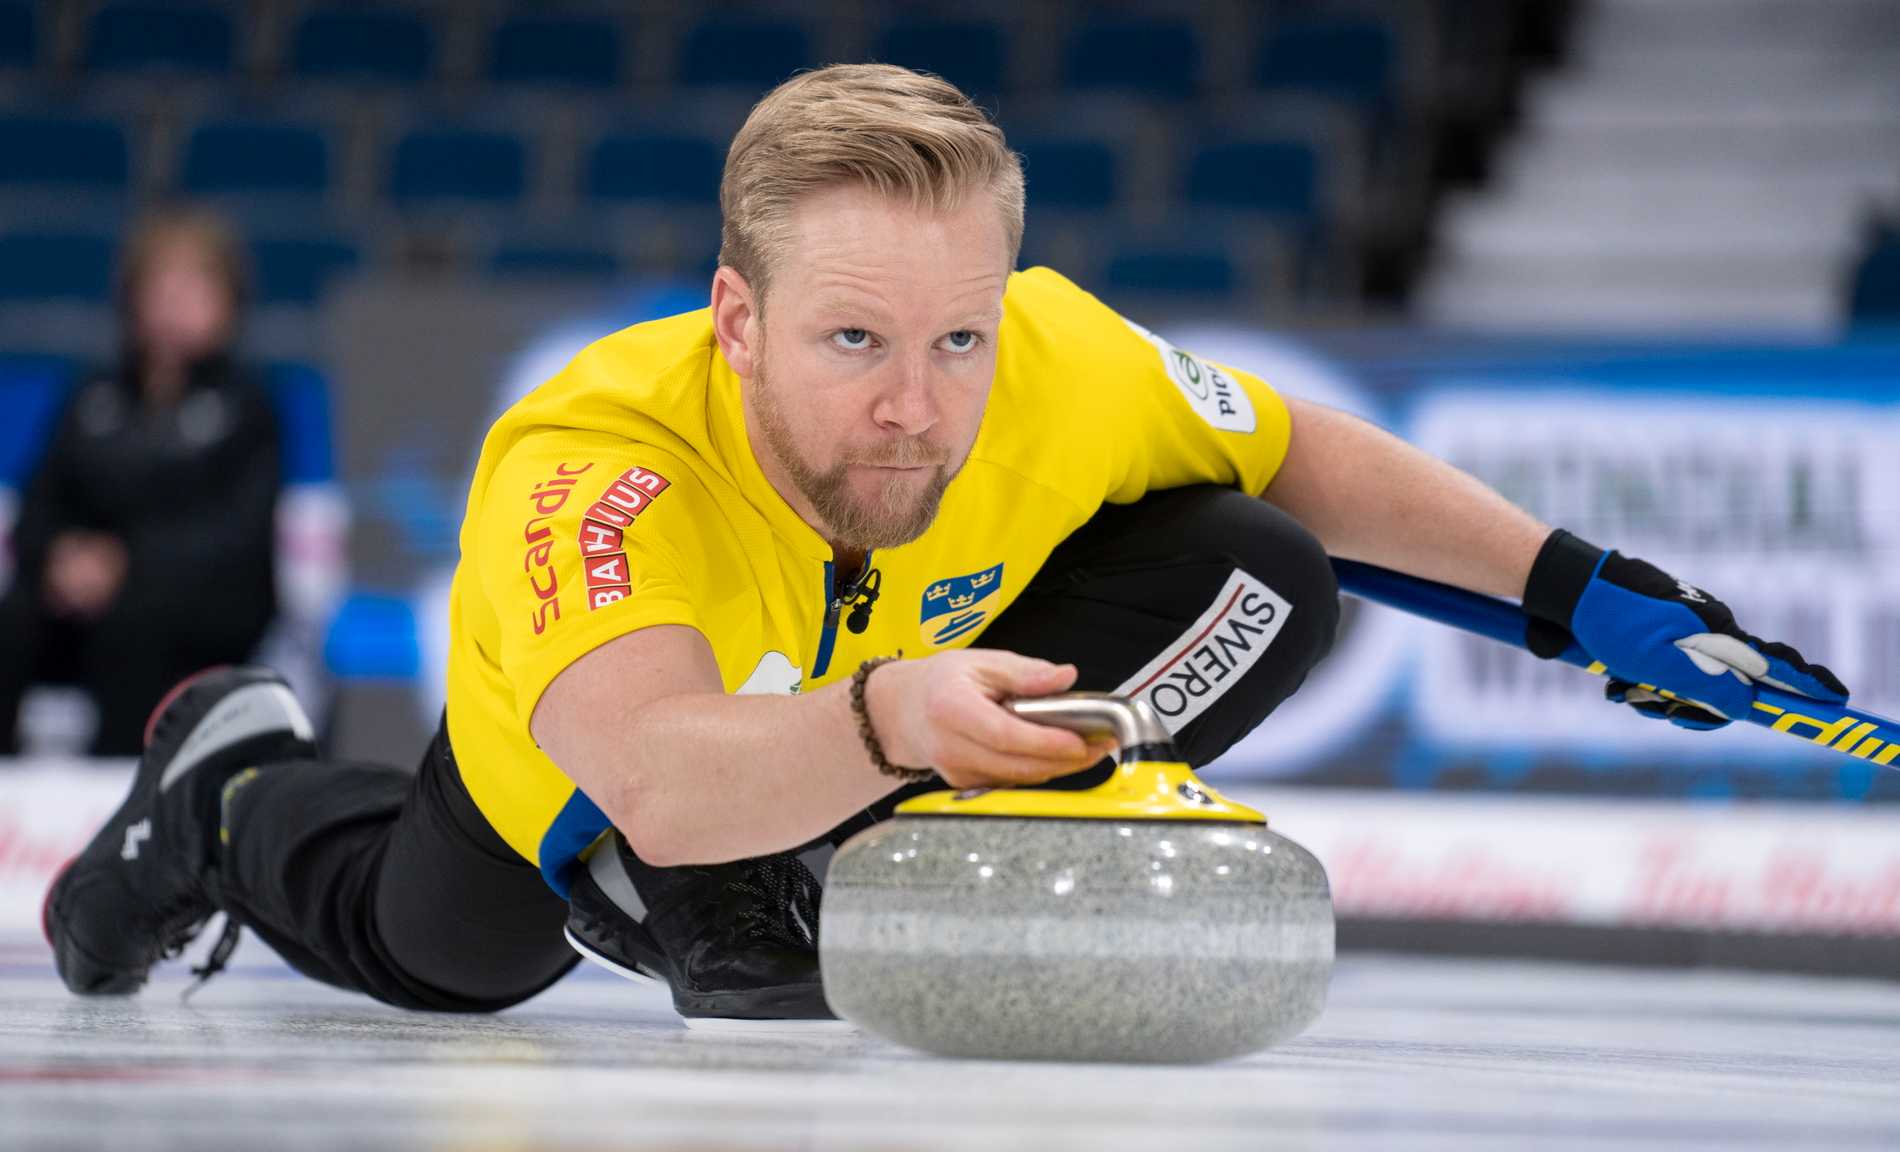 Femte raka segern för Sverige i curling-VM | Aftonbladet